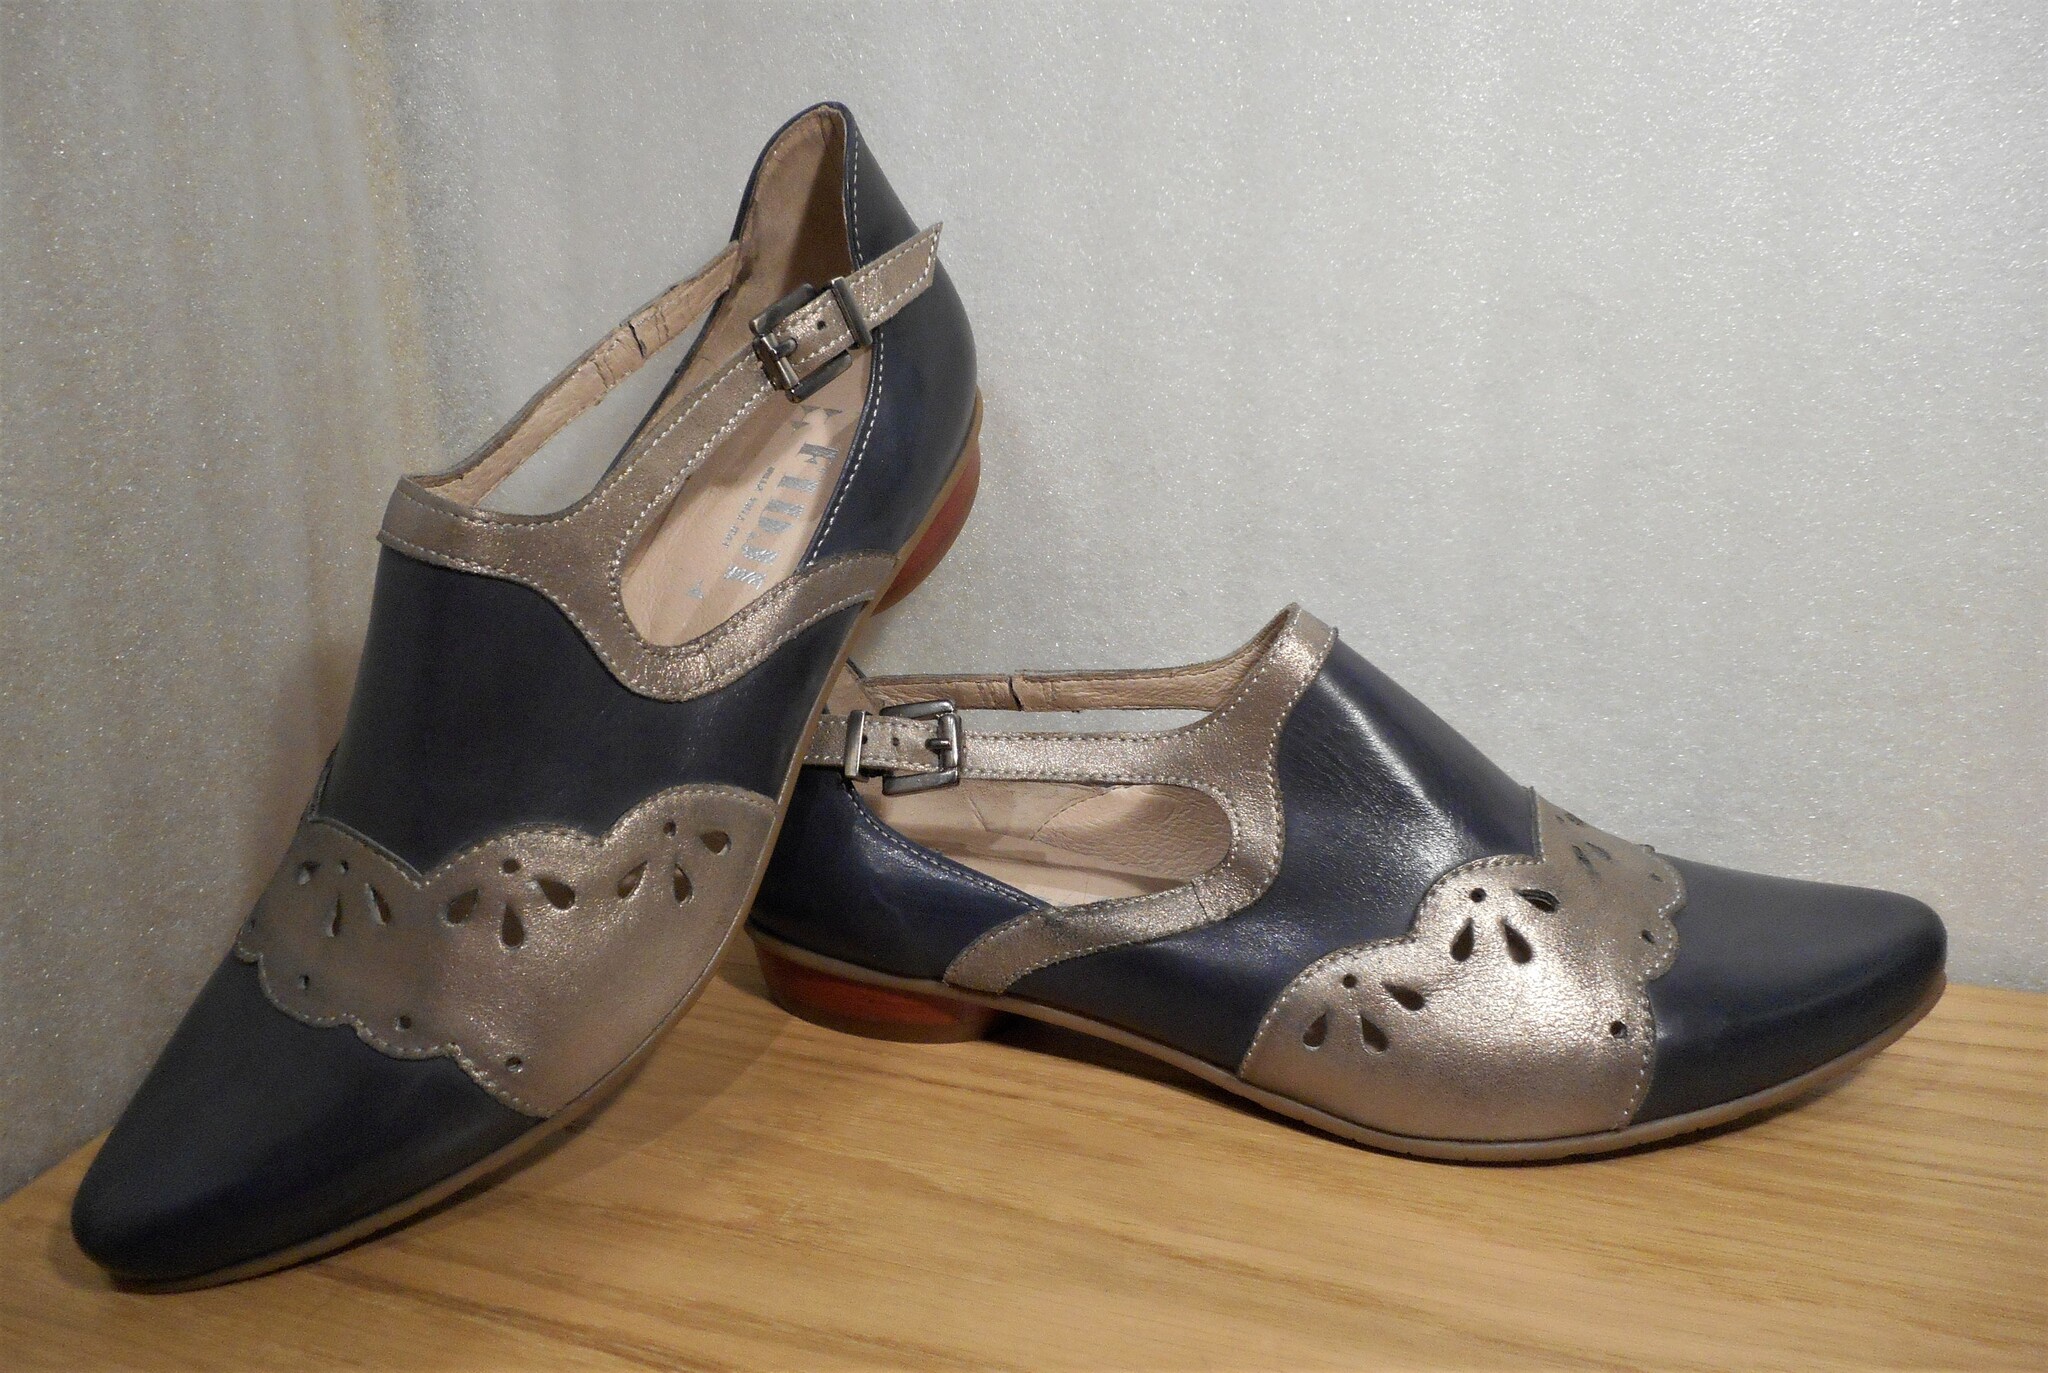 Blå/silver sko med hålmönster - fabrikat Fidji